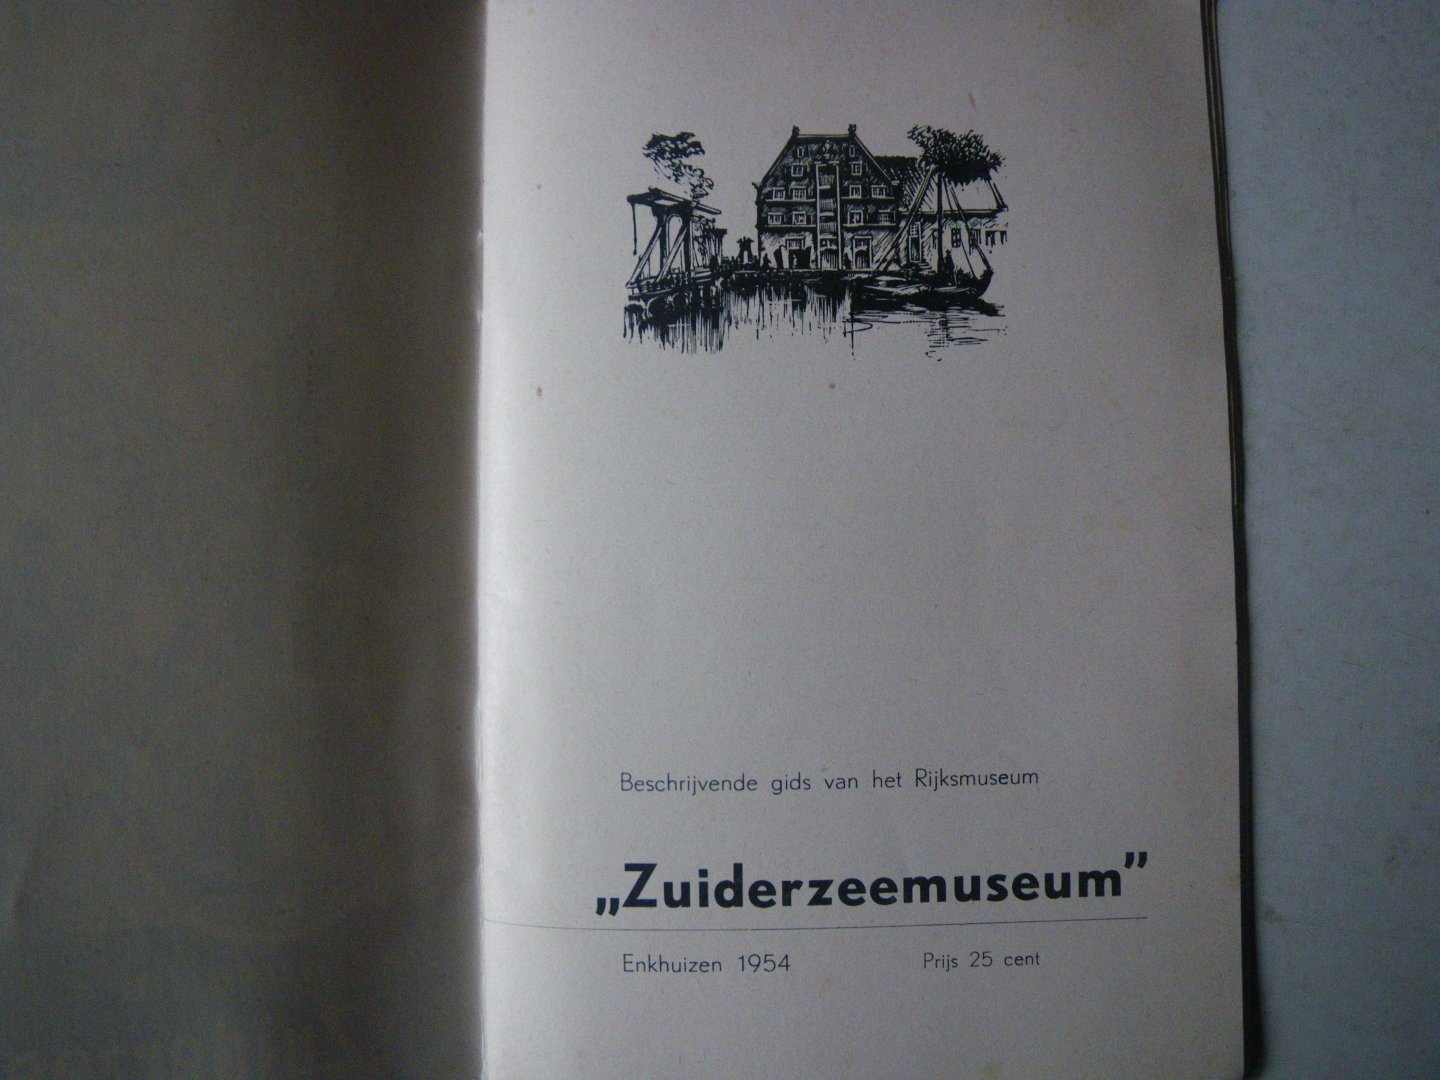  - Beschrijvende gids van het rijksmuseum Zuiderzeemuseum 1954